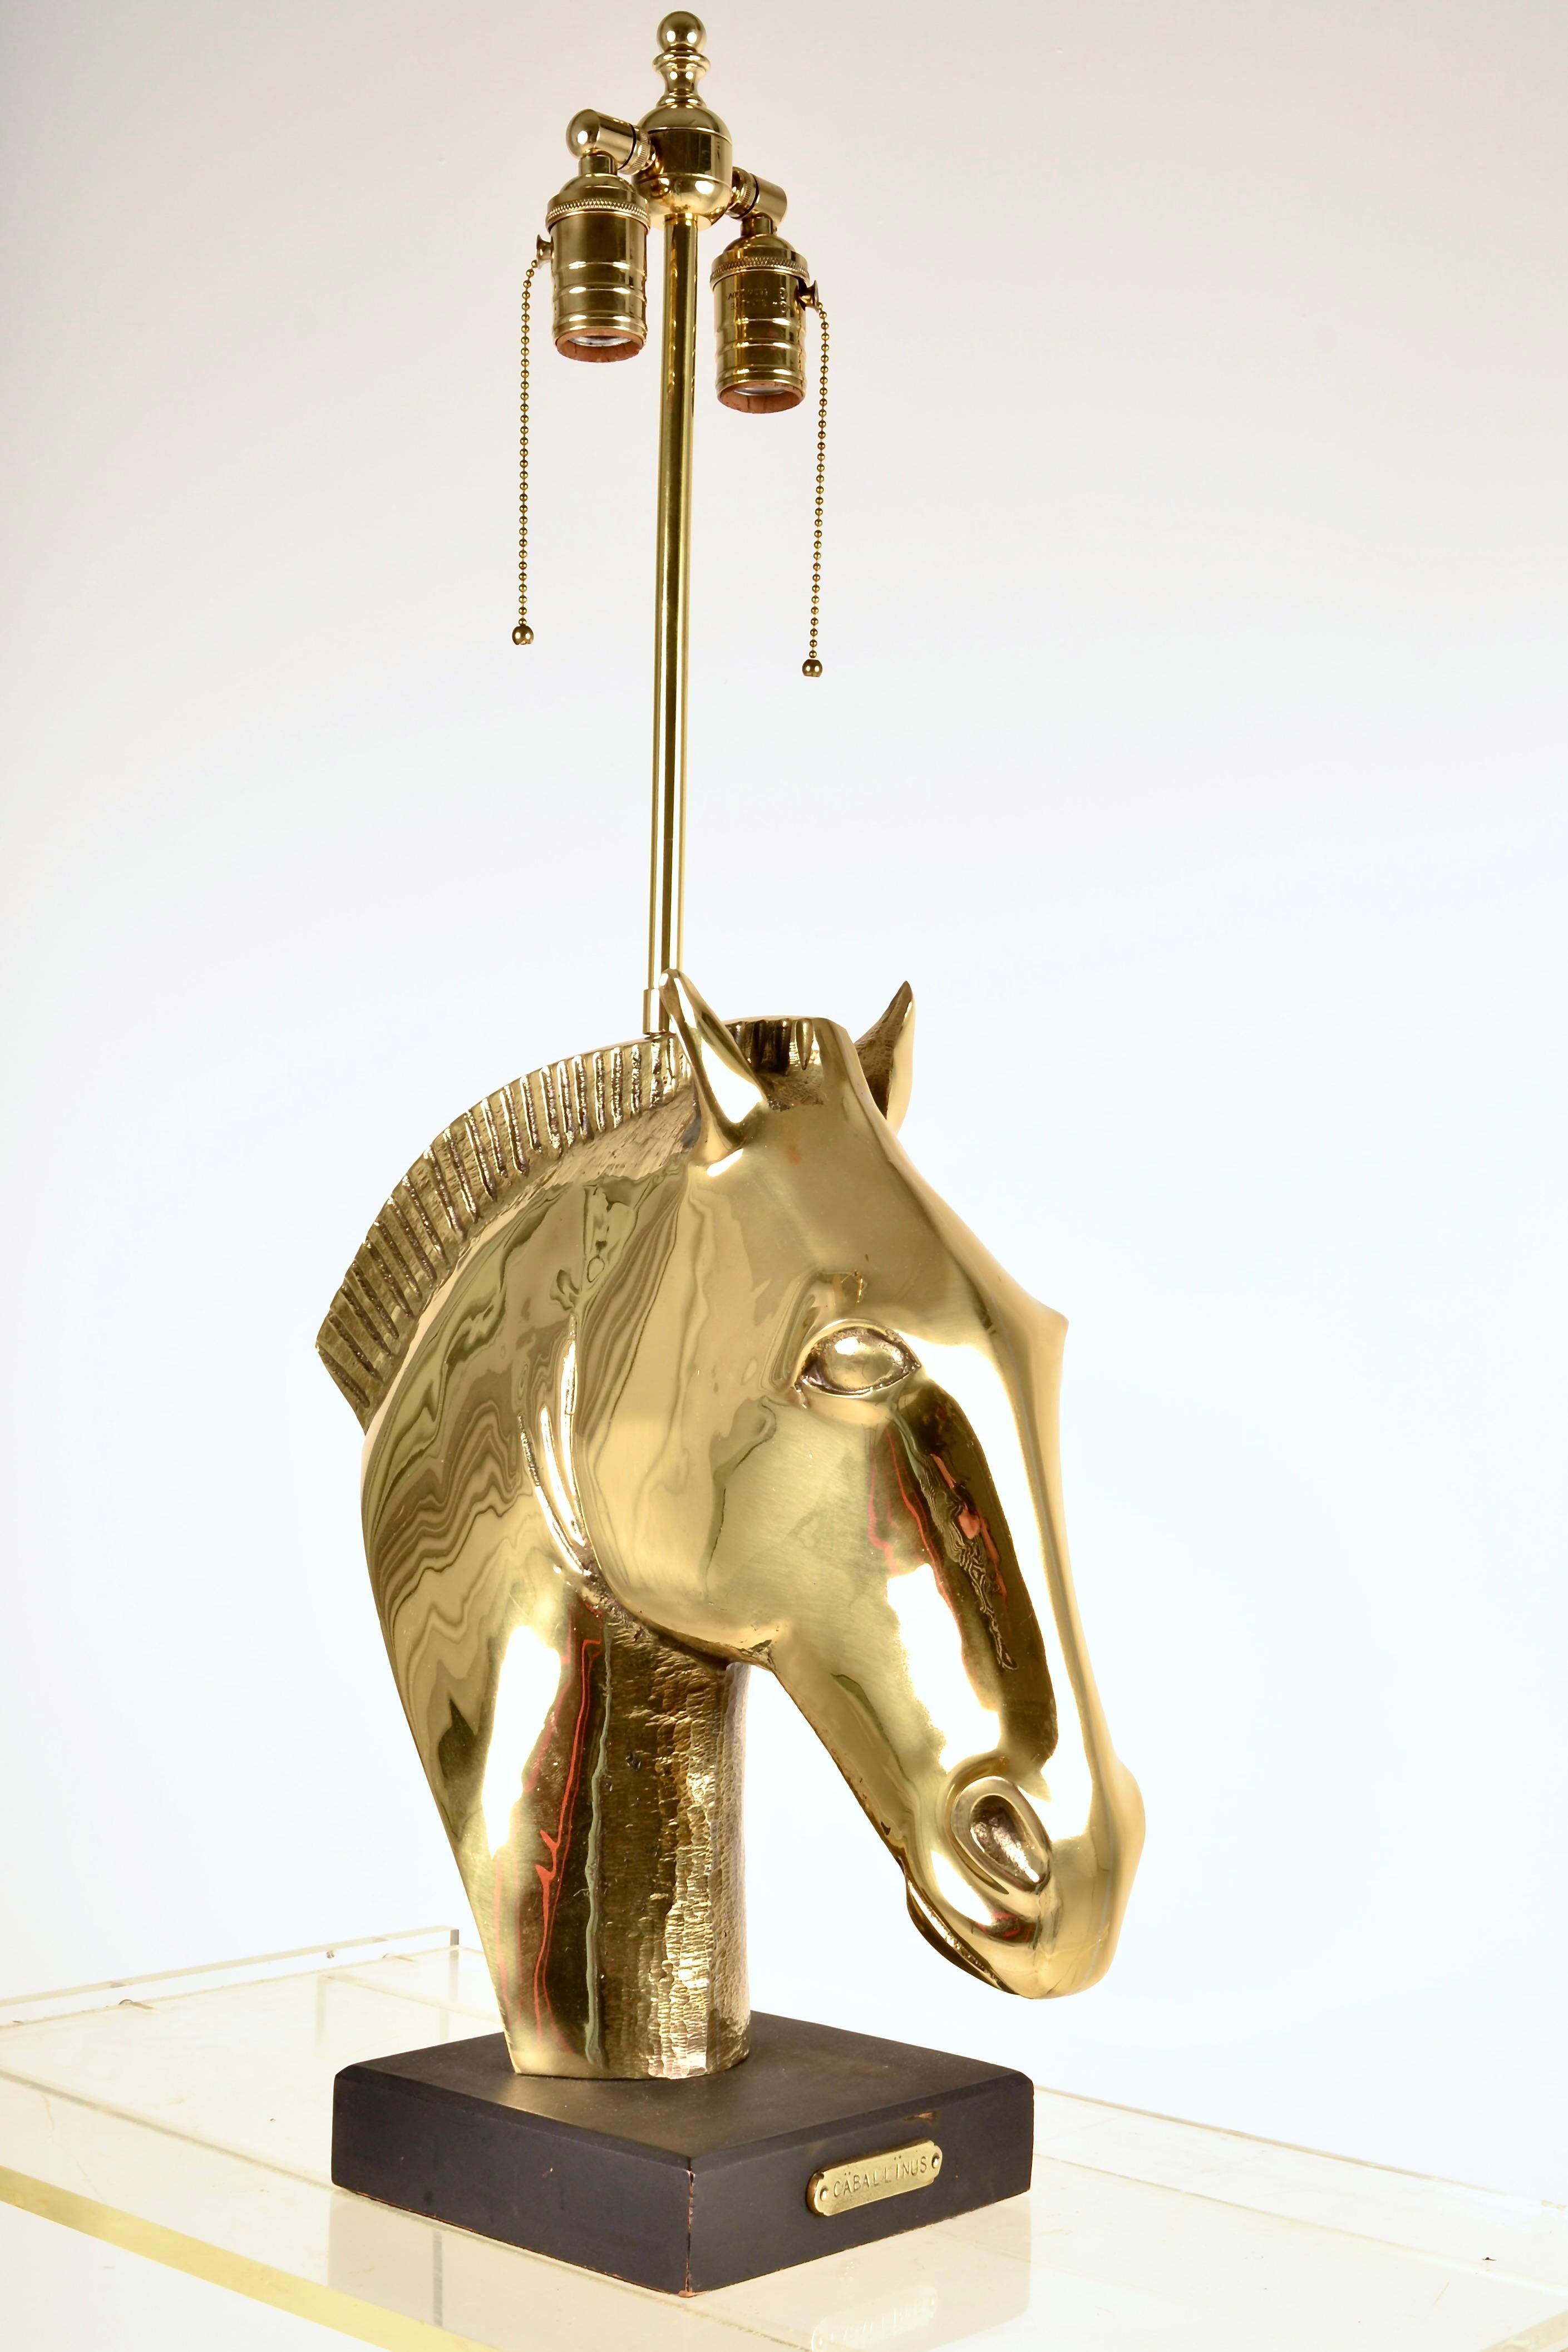 Lampe de superbe qualité présentant une lourde sculpture en laiton moulé représentant une tête de cheval de style romain. La plaque en laiton fixée à la base en bois est gravée du mot CABALLINUS, cheval en latin. Très belle conversion de lampe,